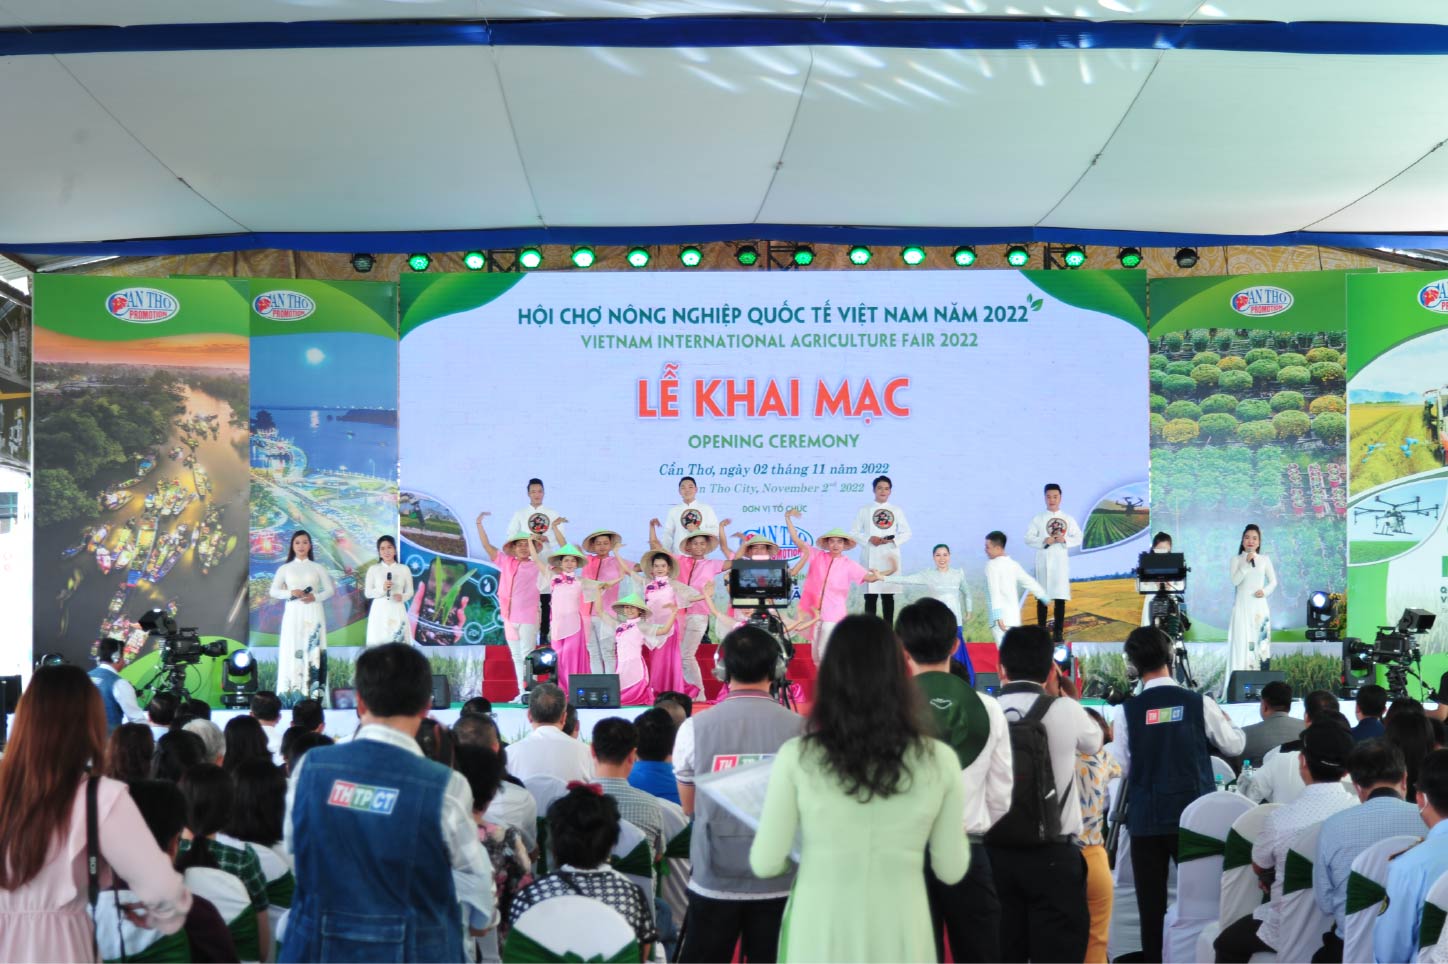 TQC giao lưu, kết nối tại Hội chợ Nông nghiệp Quốc tế Việt Nam năm 2022